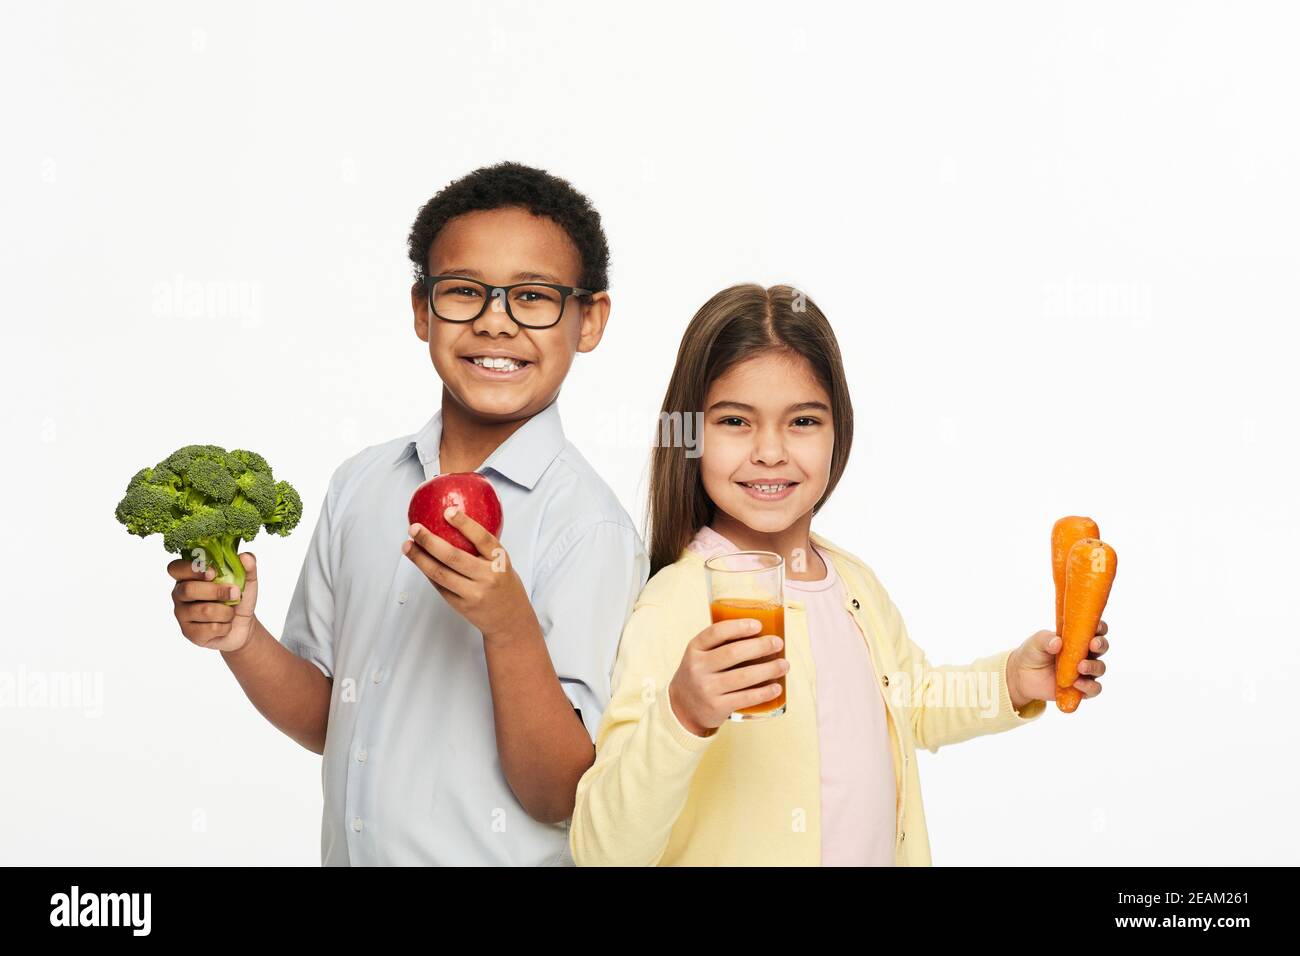 Multiethnische Gruppe von Kindern mit gesundem Gemüse, Obst und Karottensaft. Werbung für Kinder gesunde Ernährung Stockfoto